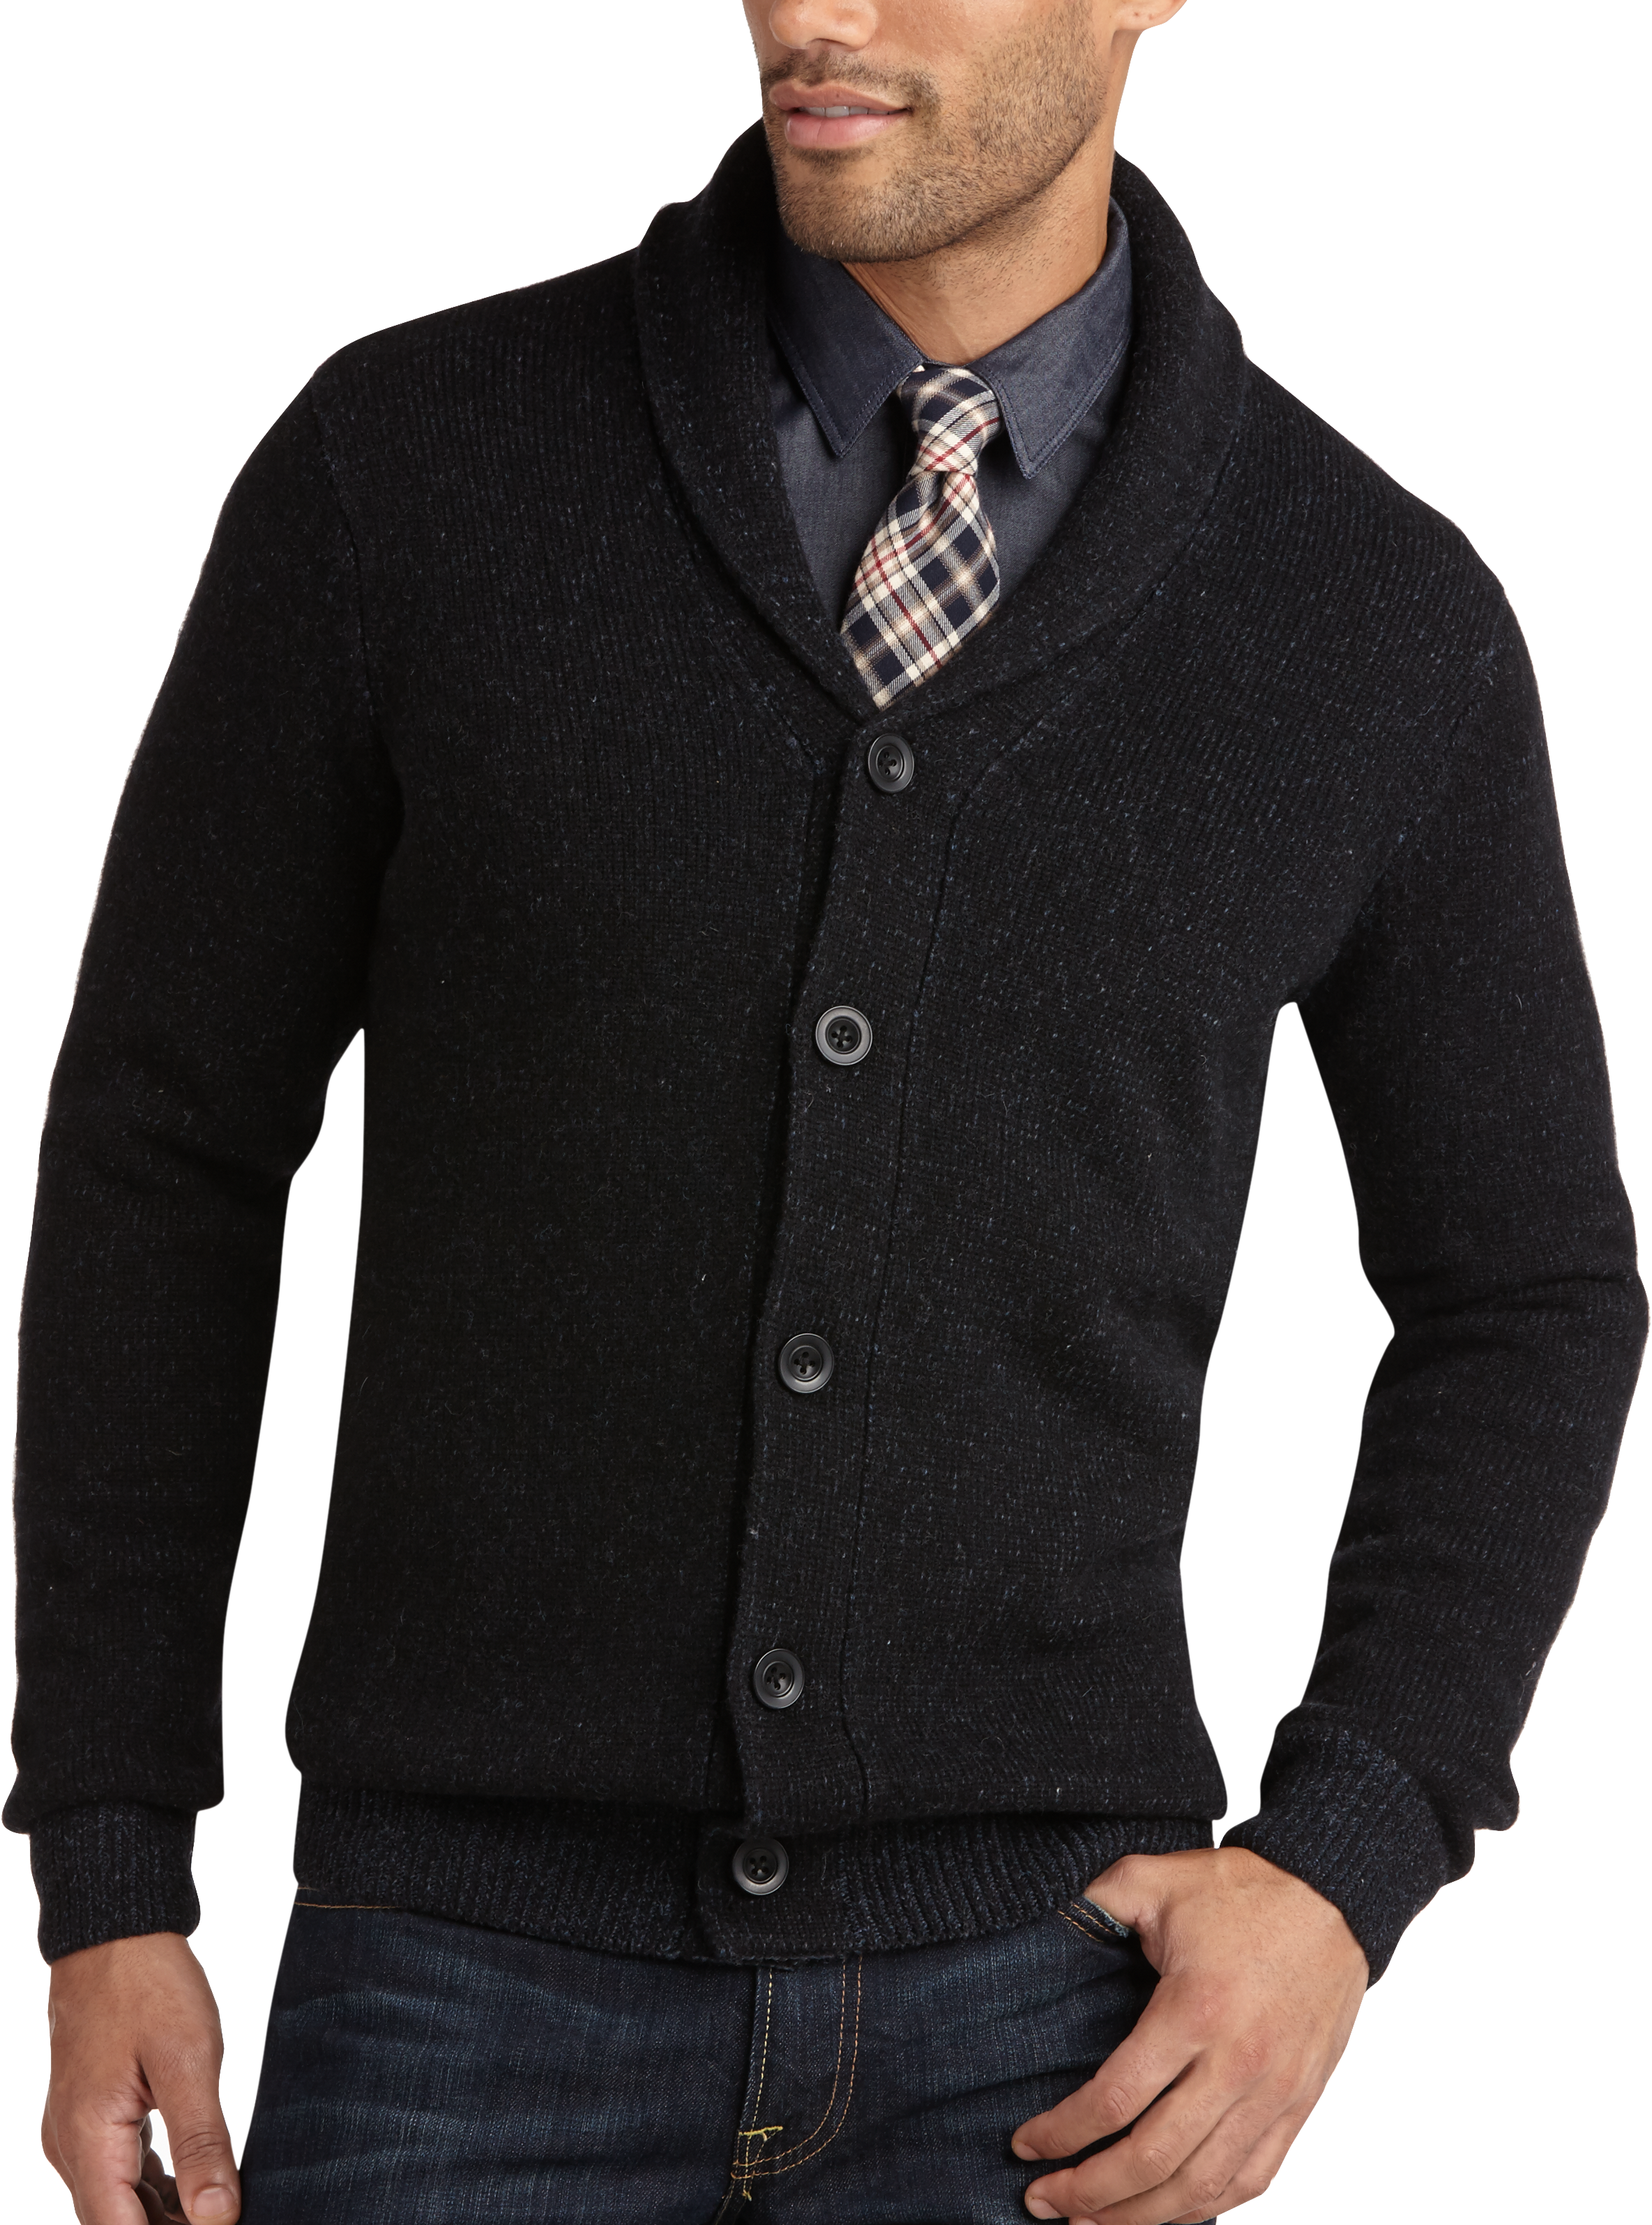 Big & Tall Men's Sweaters, Vests, Jackets & Hoodies | Men's Wearhouse